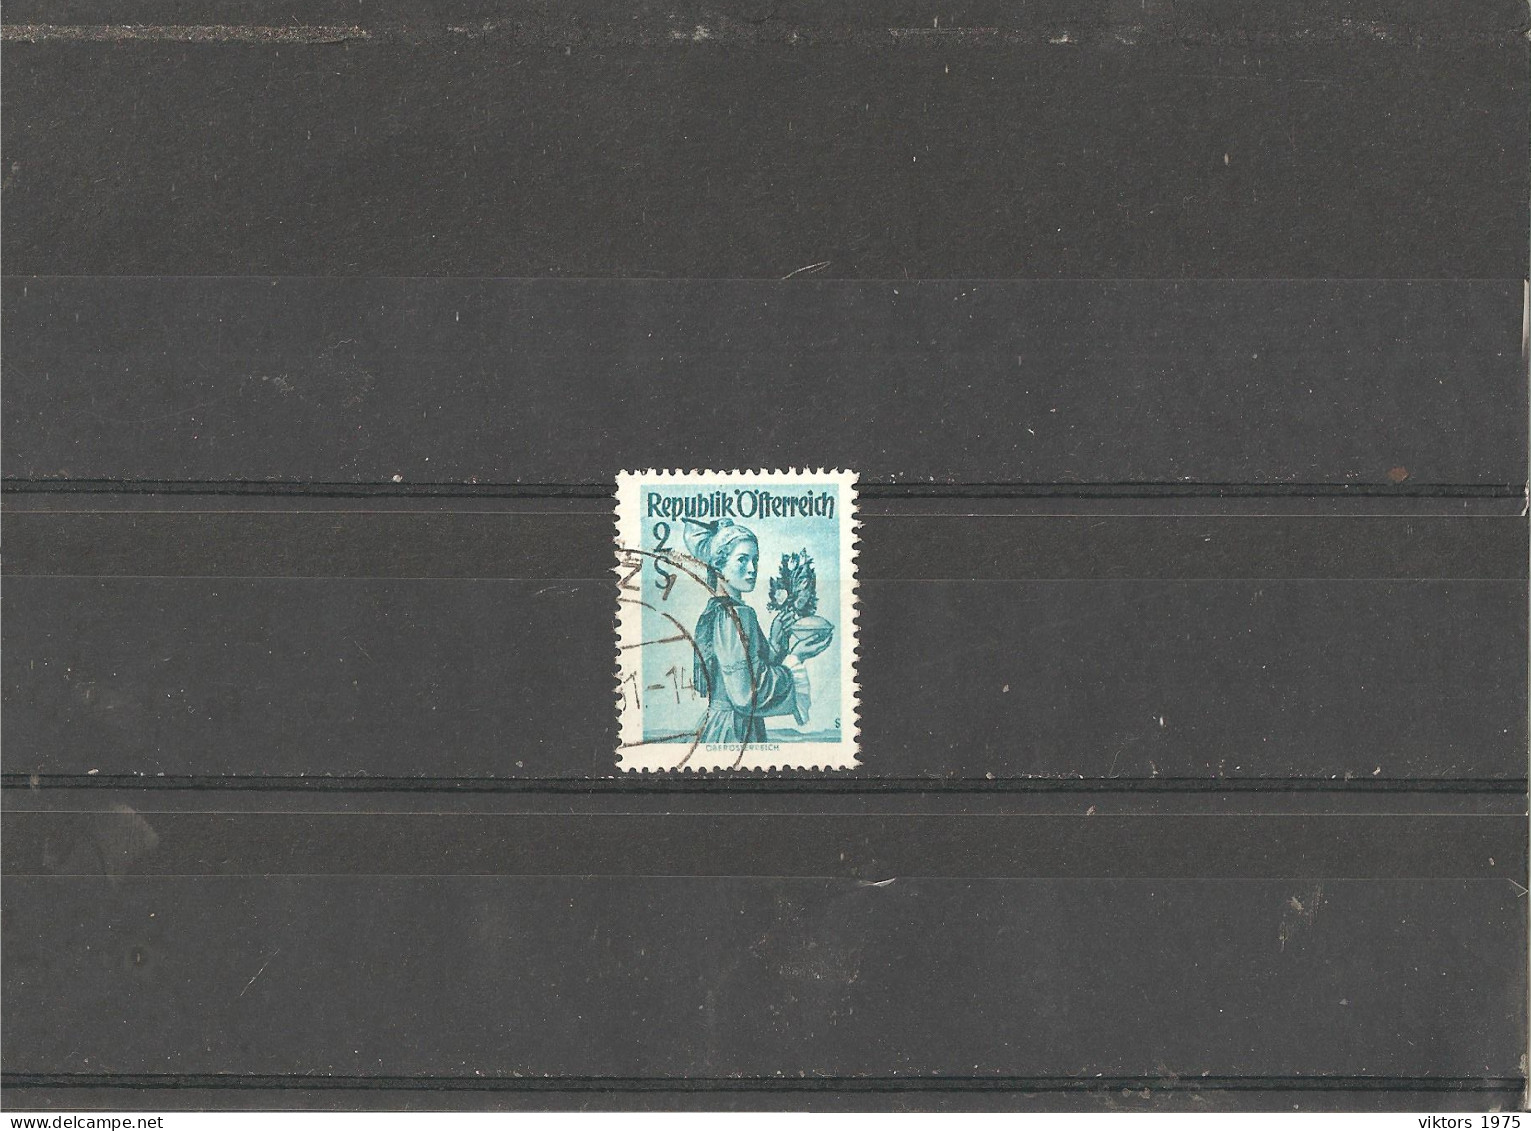 Used Stamp Nr.919 In MICHEL Catalog - Gebruikt